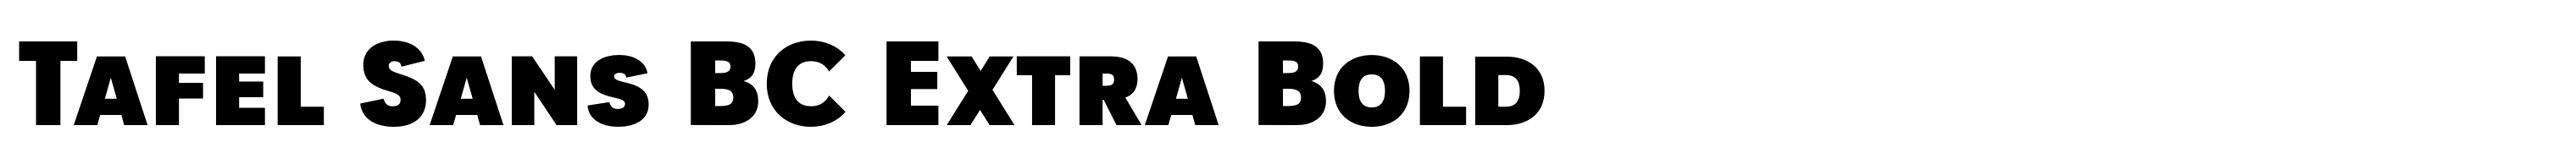 Tafel Sans BC Extra Bold